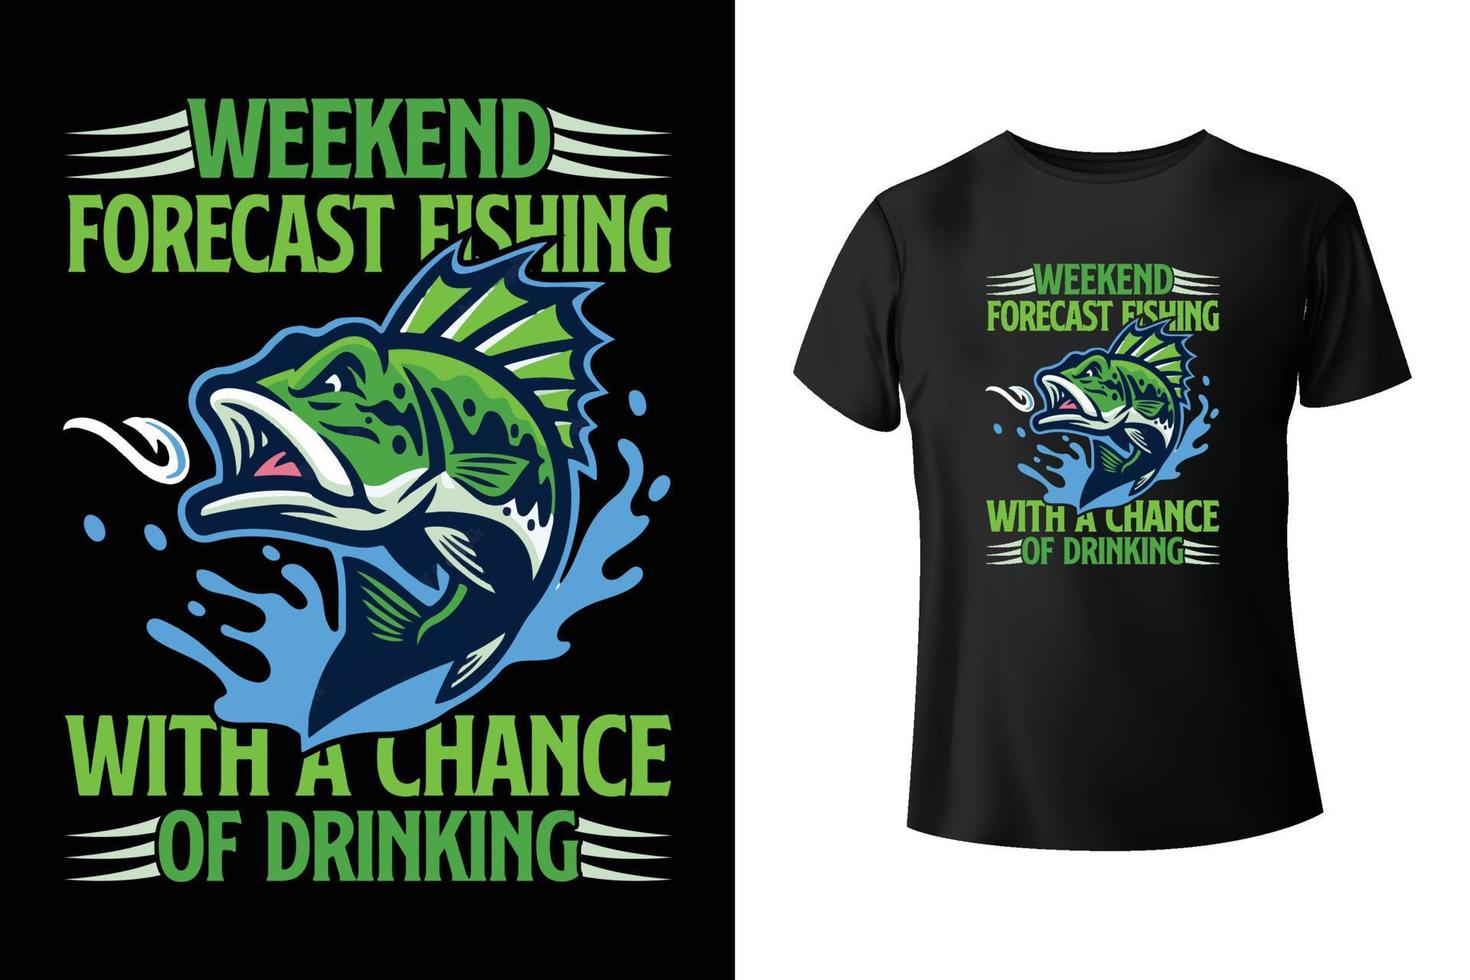 helgen prognos fiske med en chans av dricka - fiske t-shirt design mall vektor